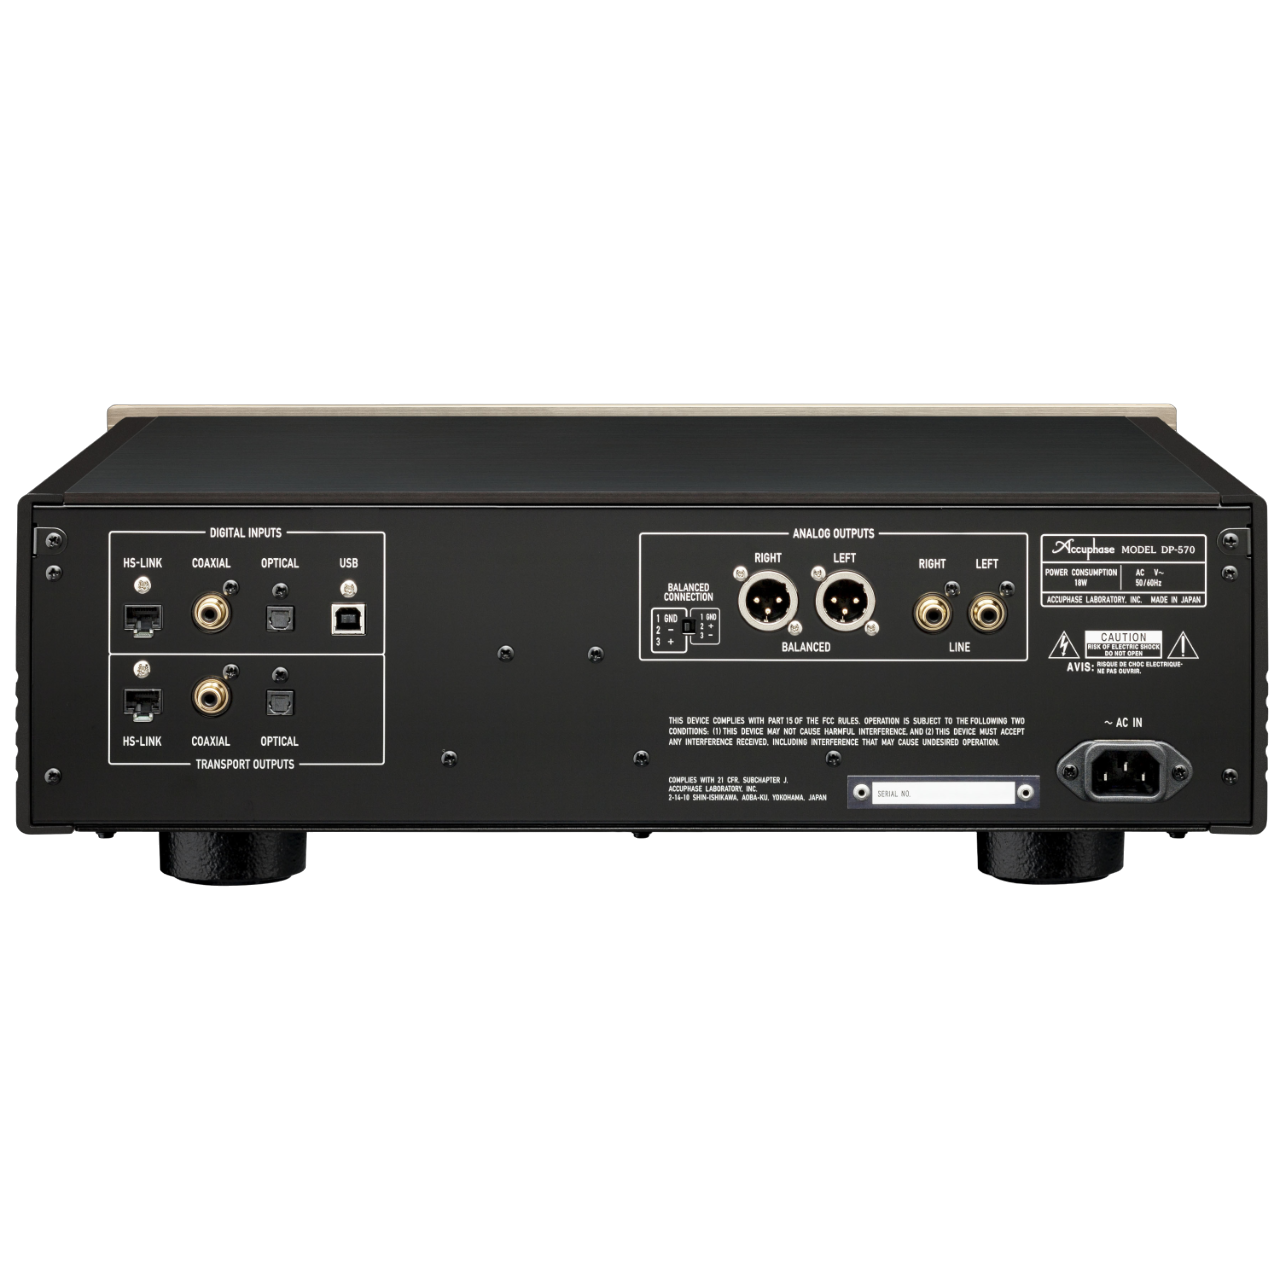 DP-570 | CD/SACD Player